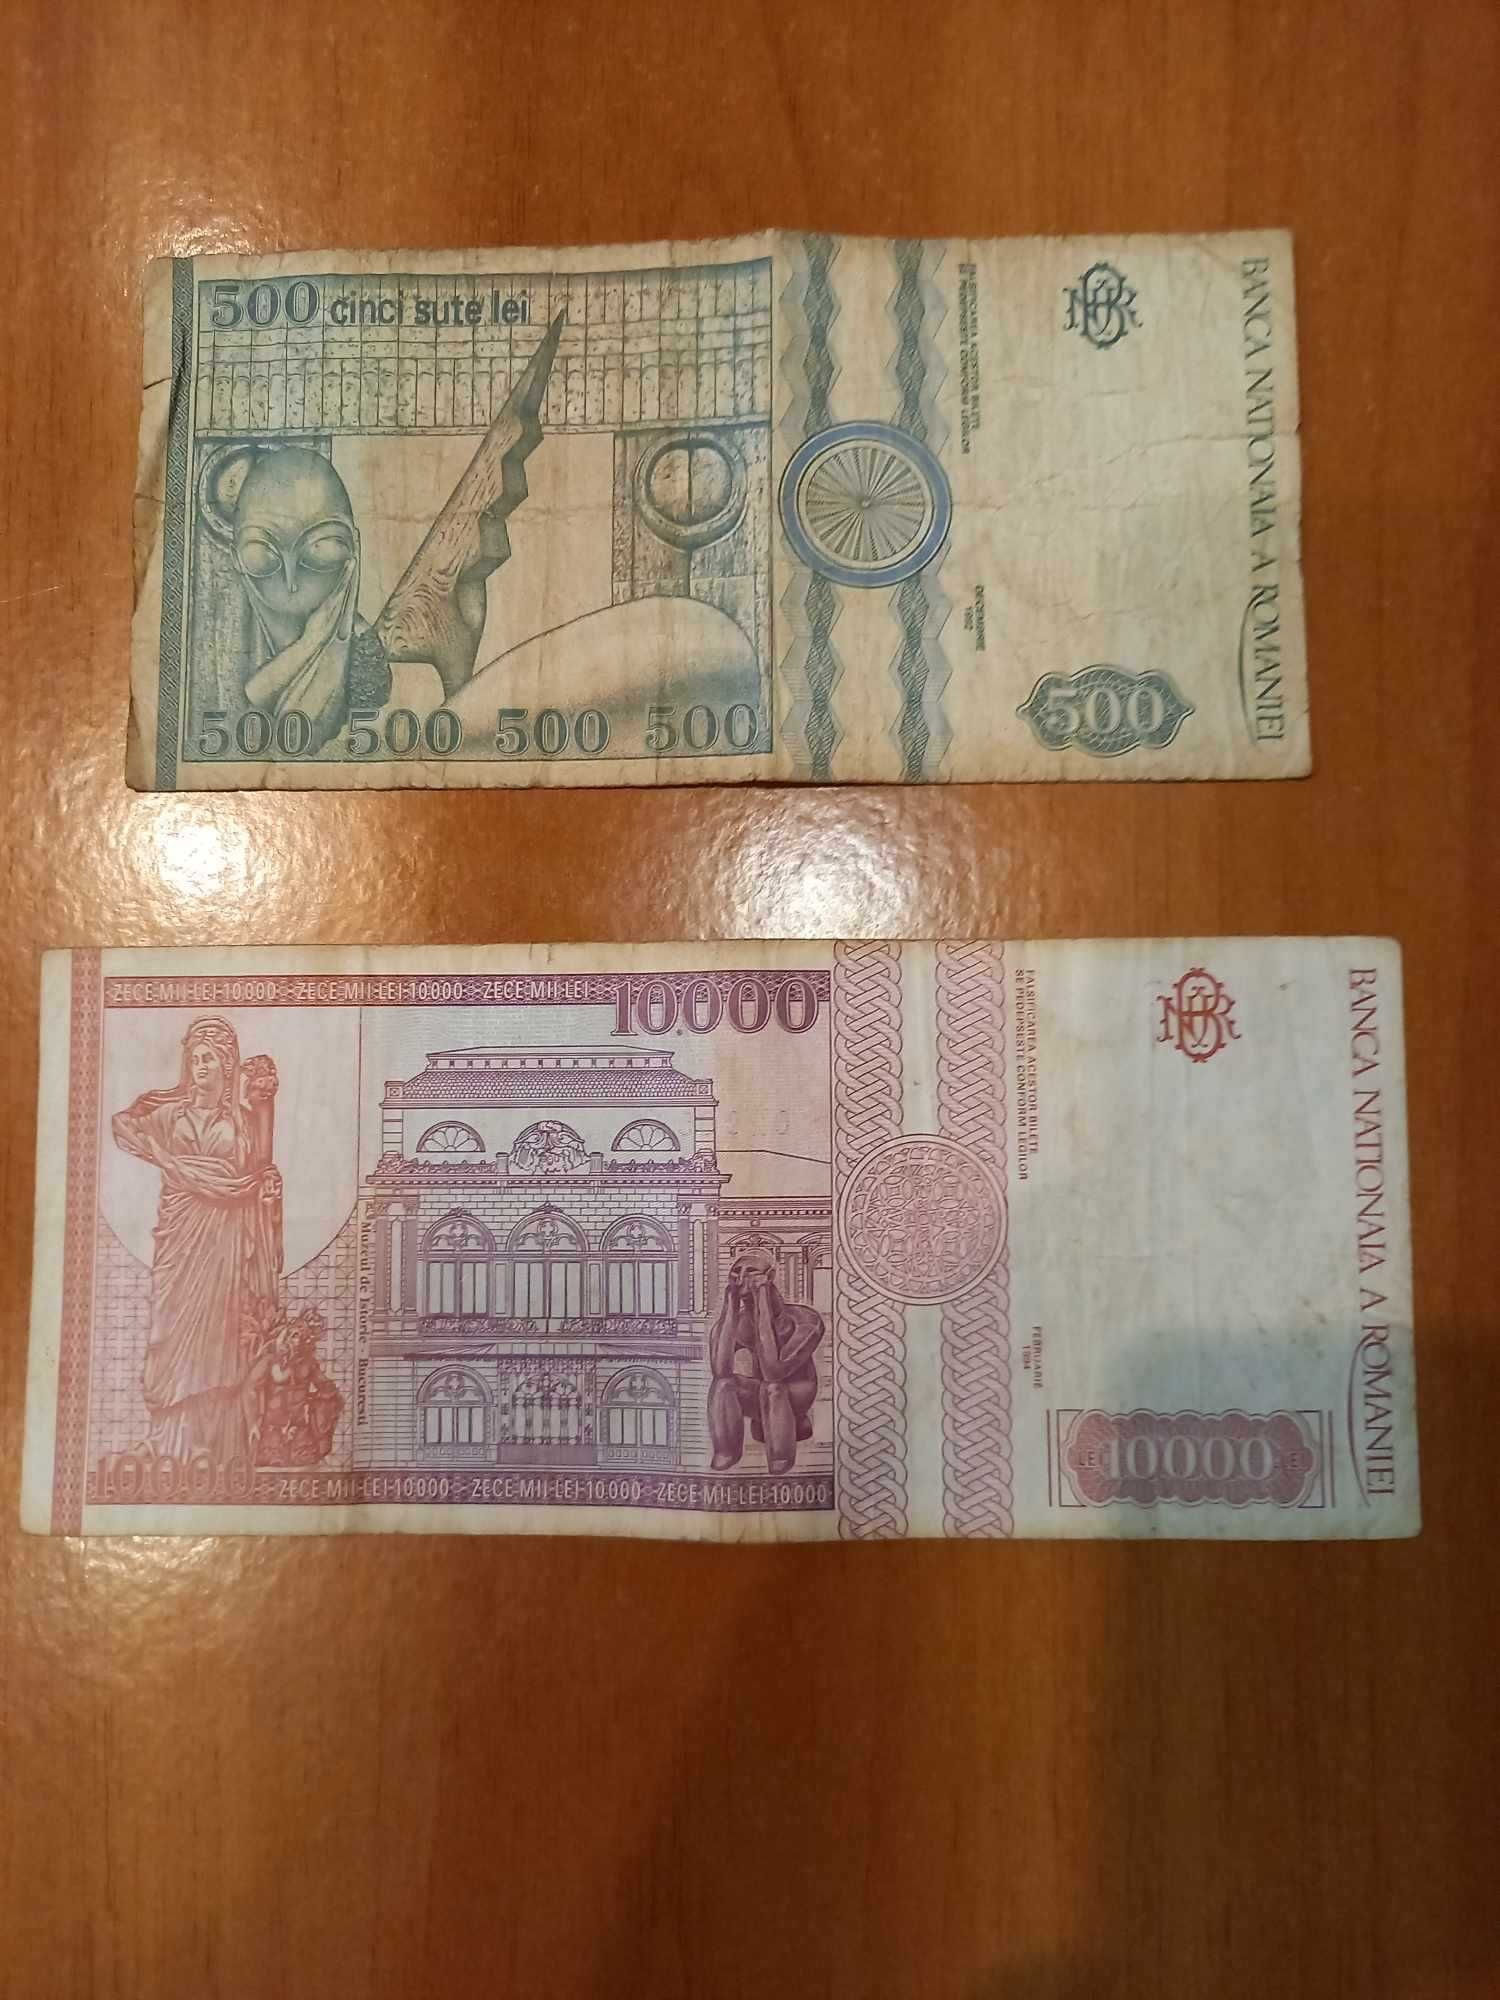 2 bancnote (500 lei Constantin Brancusi si 10 000 lei Nicolae Iorga)